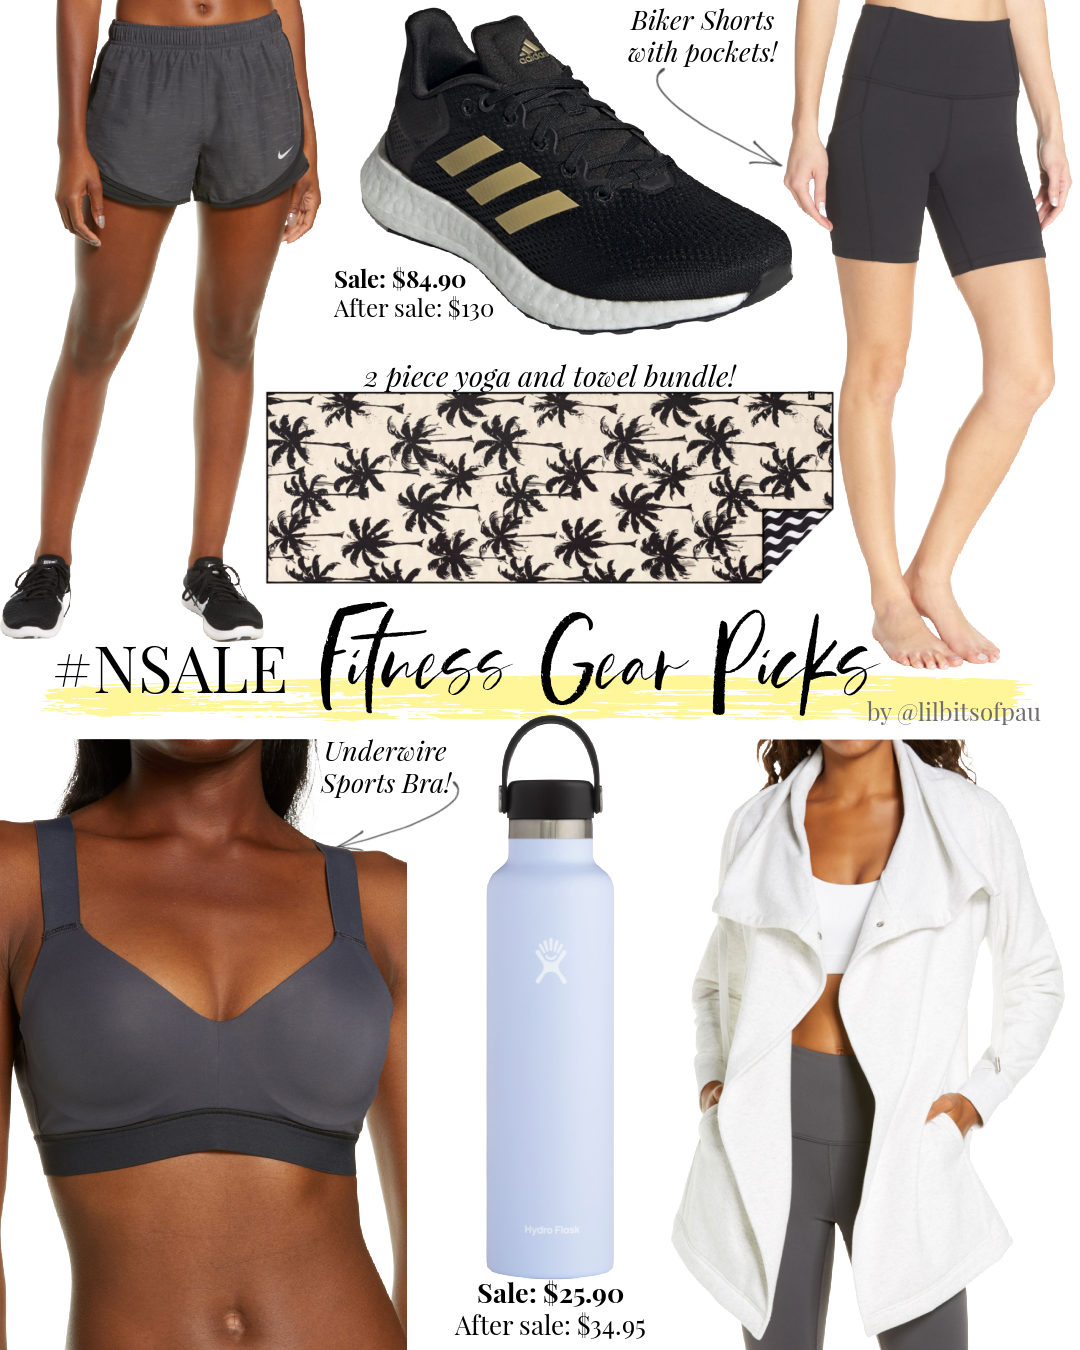 Nsale fitness gear picks